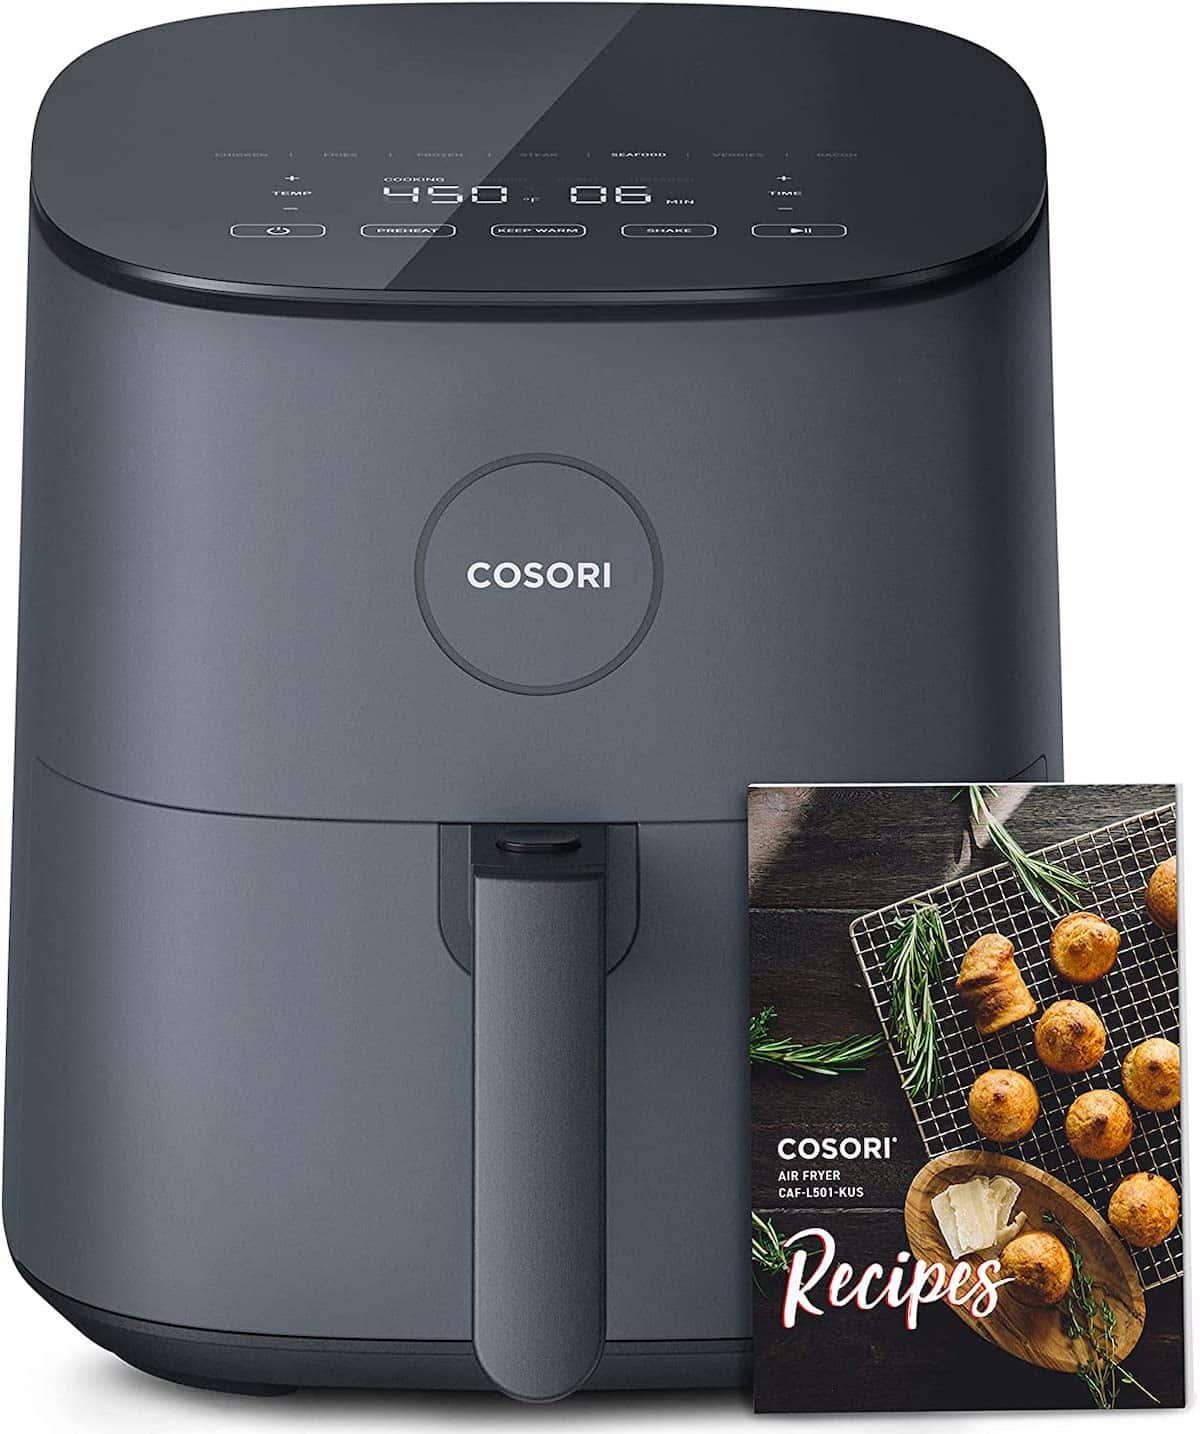 Image of Cosori air fryer